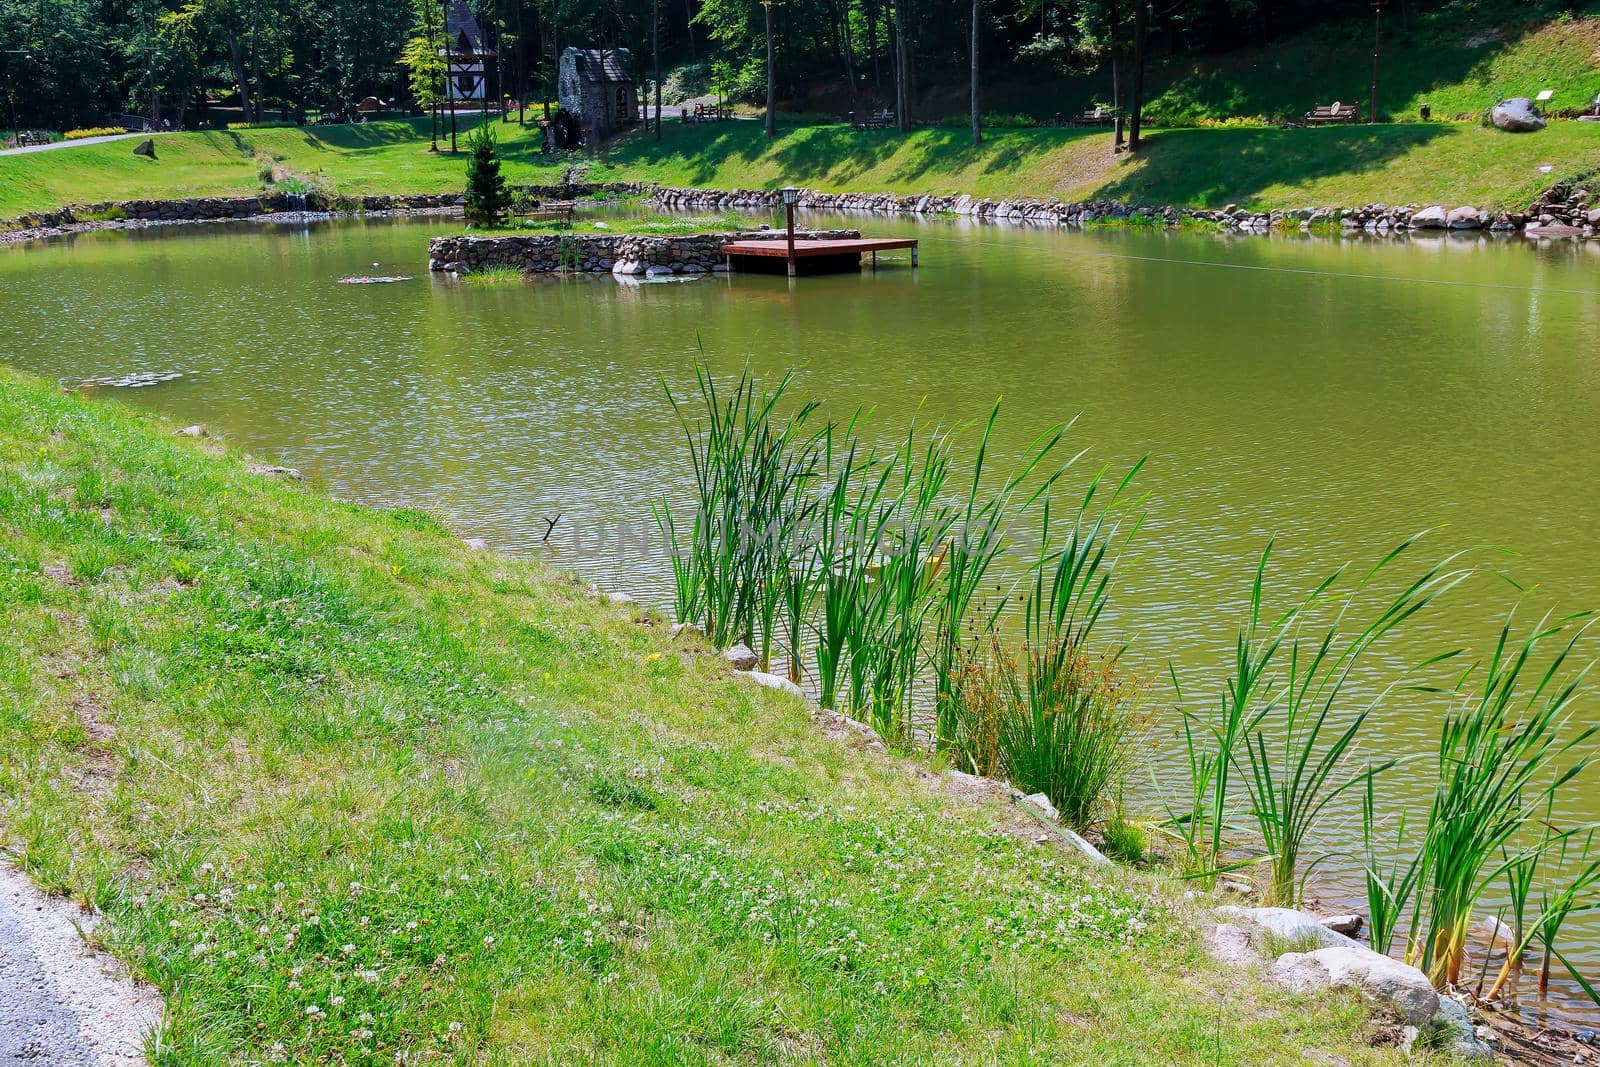 reeds at the lake shore, selective focus reeds lake